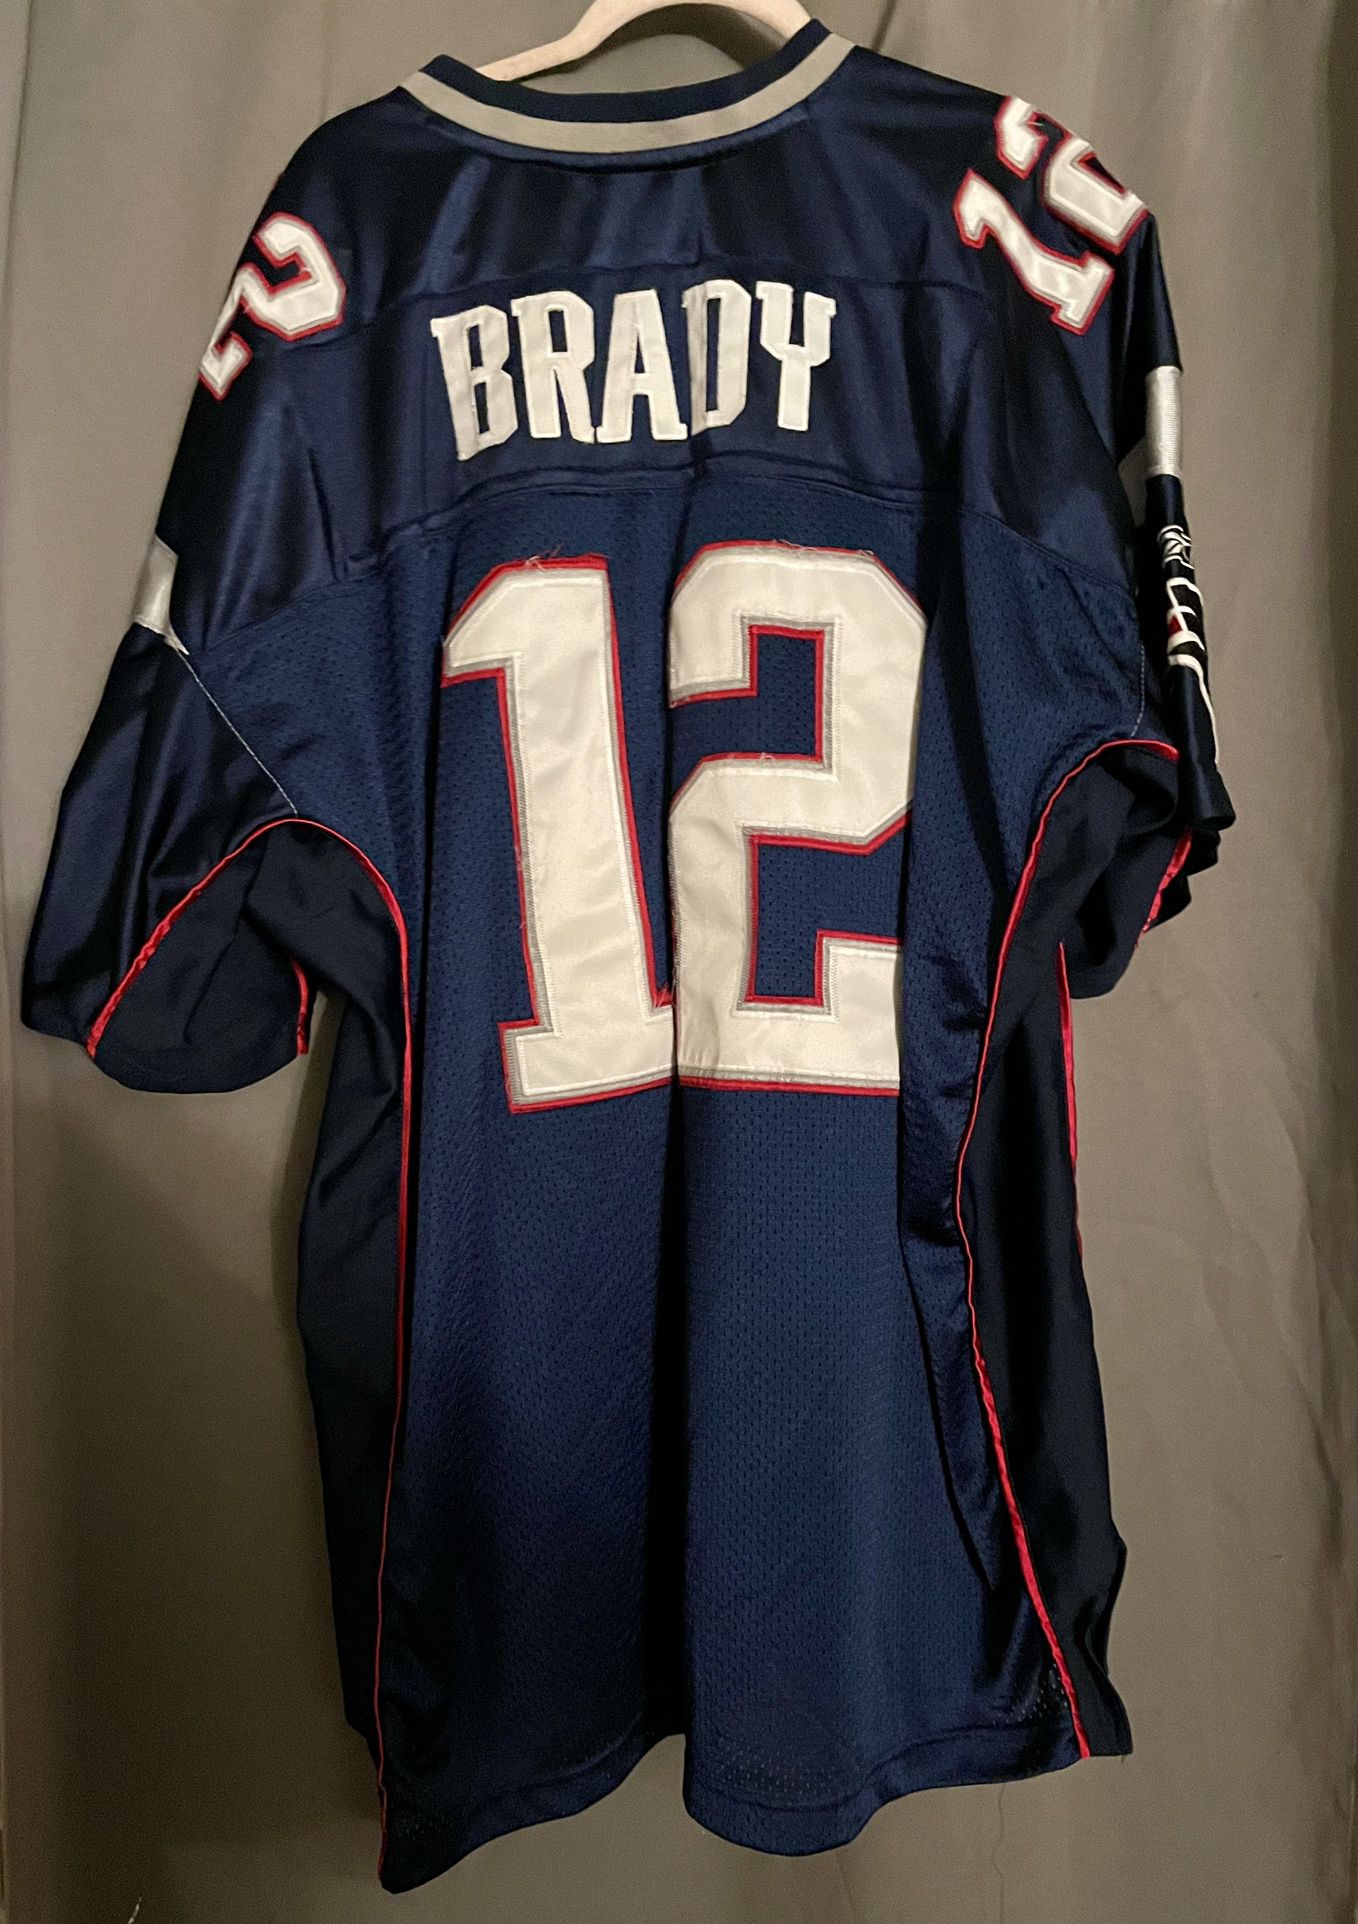 Reebok NFL New England Patriots Jersey - Tom Brady 12